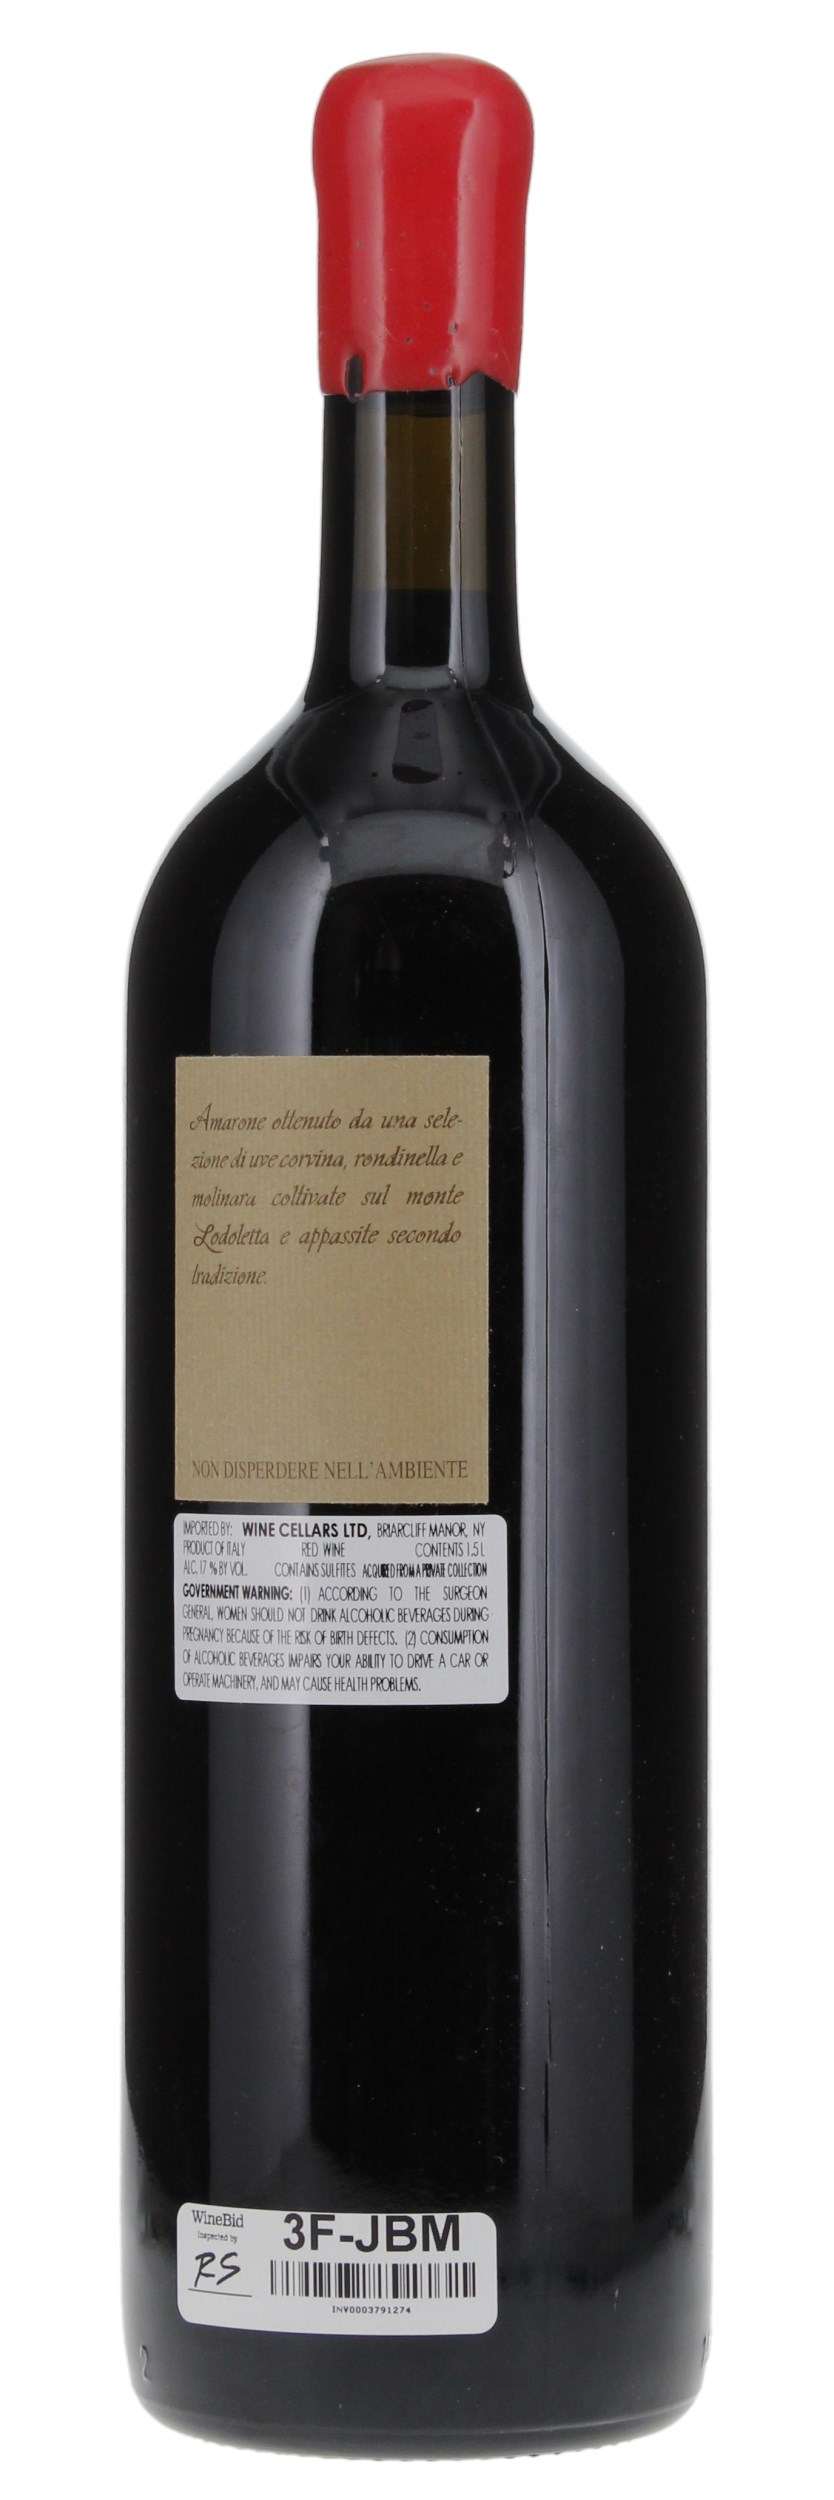 2001 Romano Dal Forno Amarone della Valpolicella Vigneto Monte Lodoletta, 1.5ltr